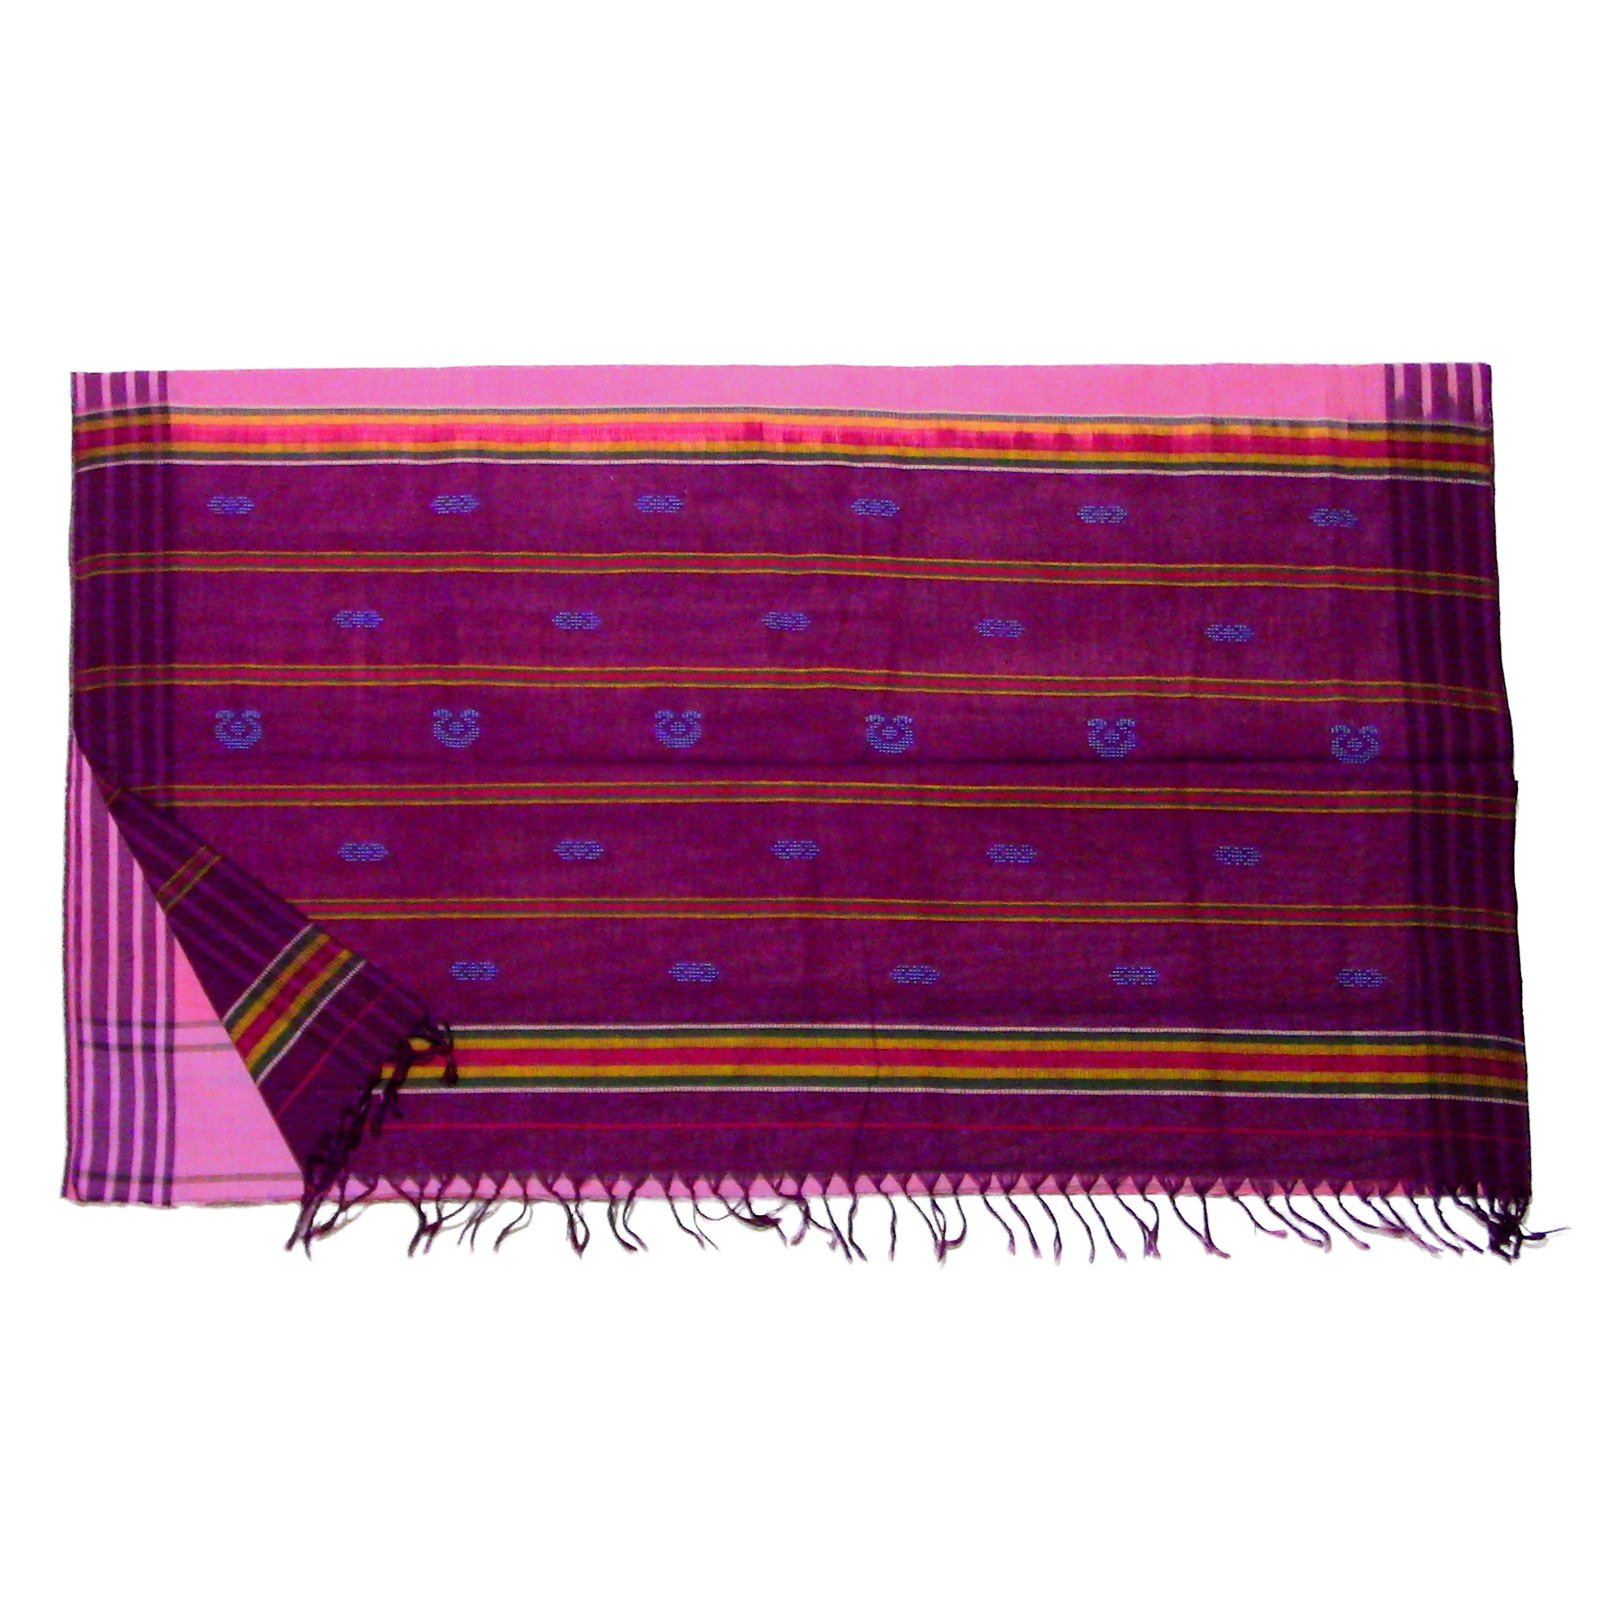 40 count pink saree with motifs | udupi saree revival